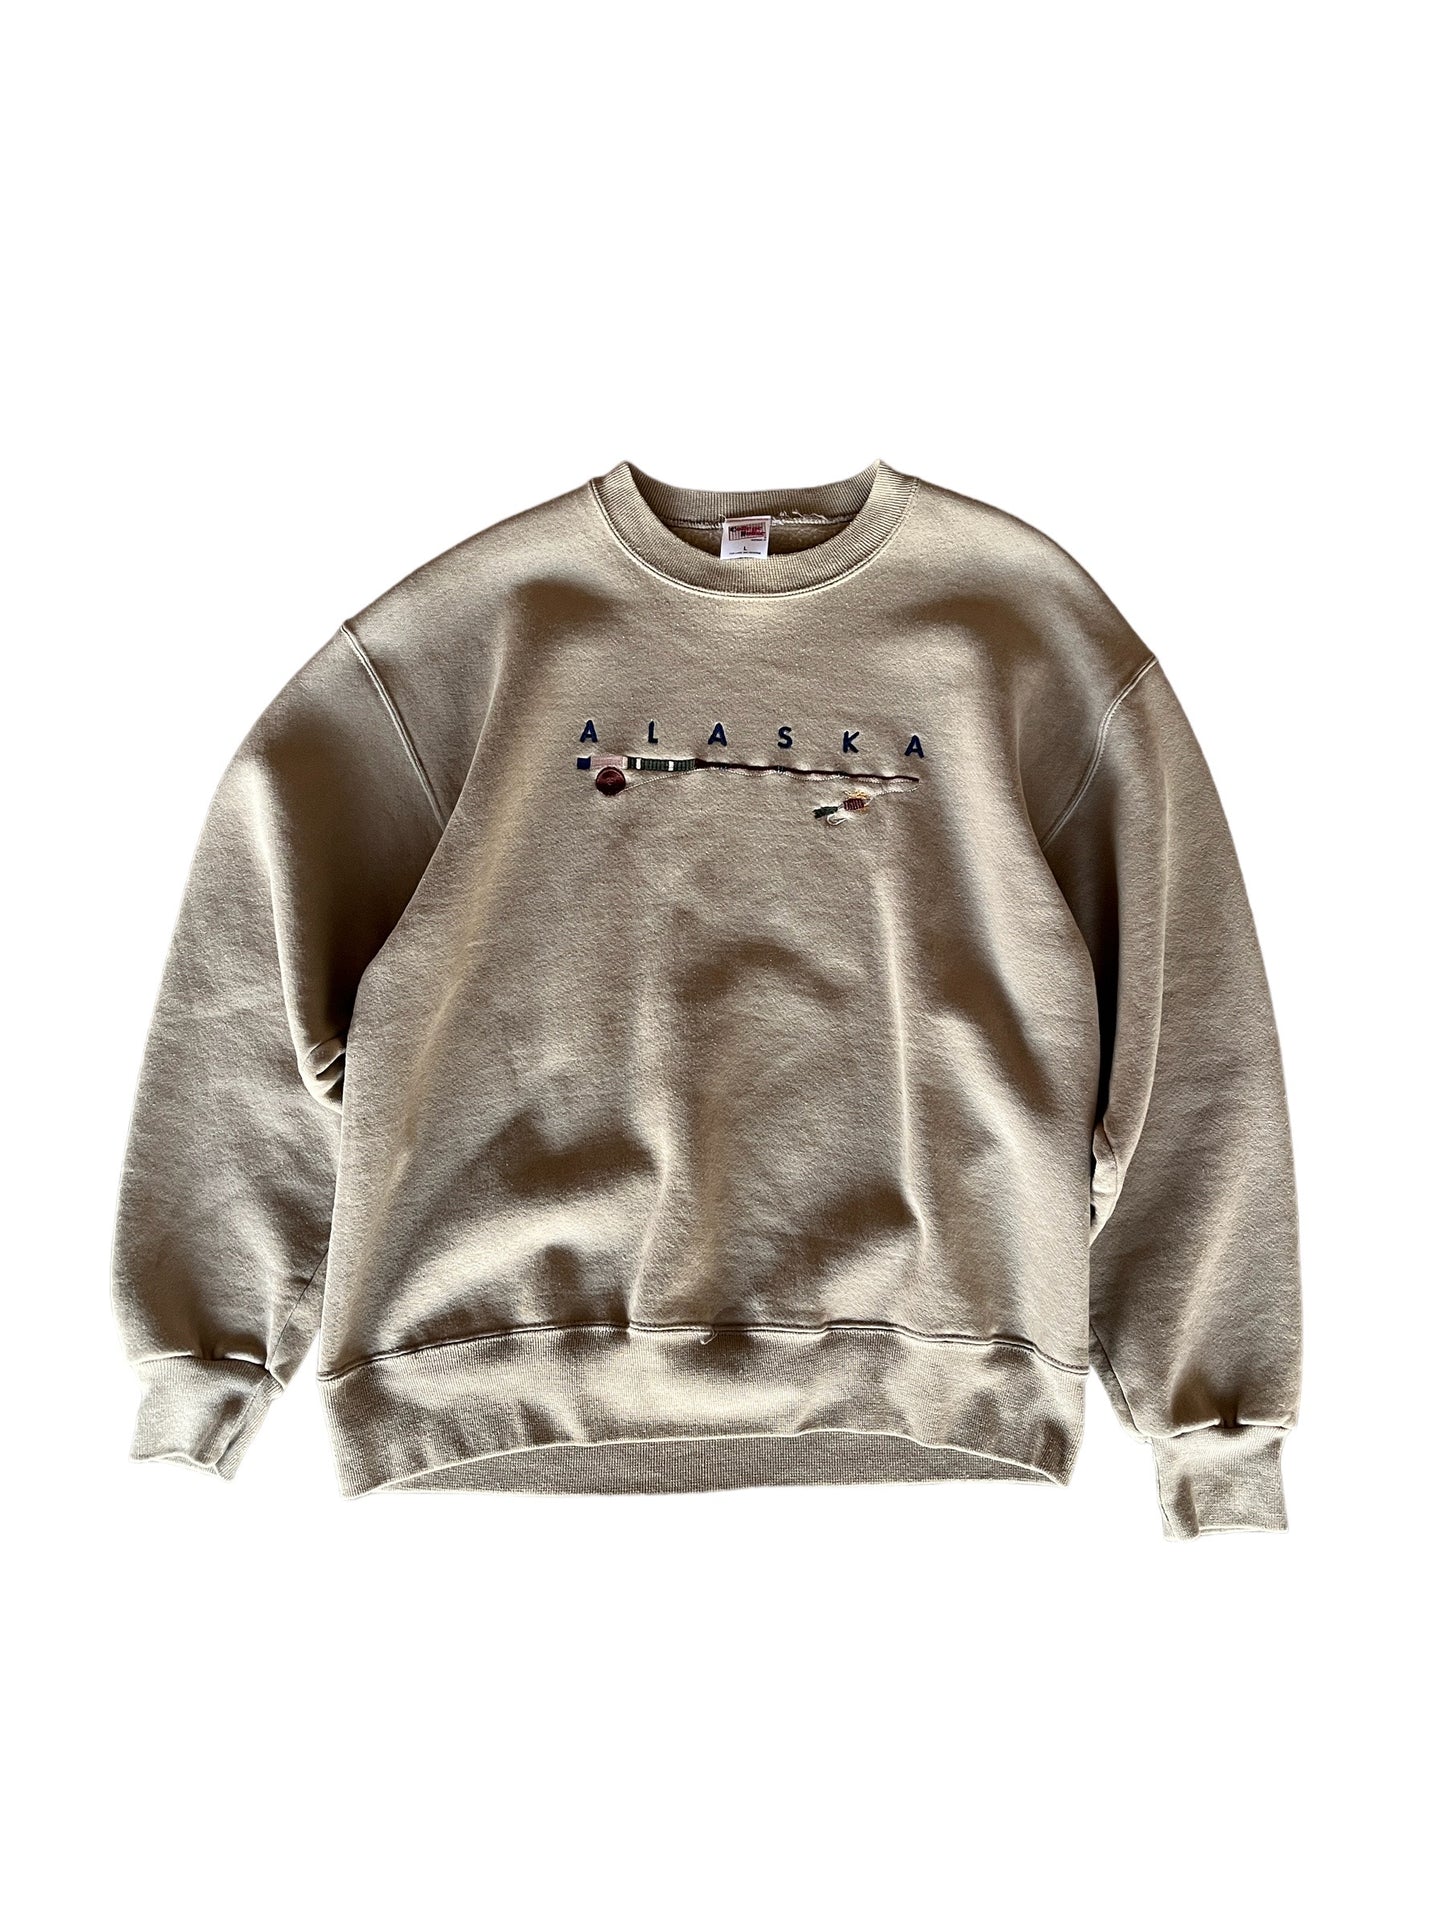 Vintage Alaska Sweater